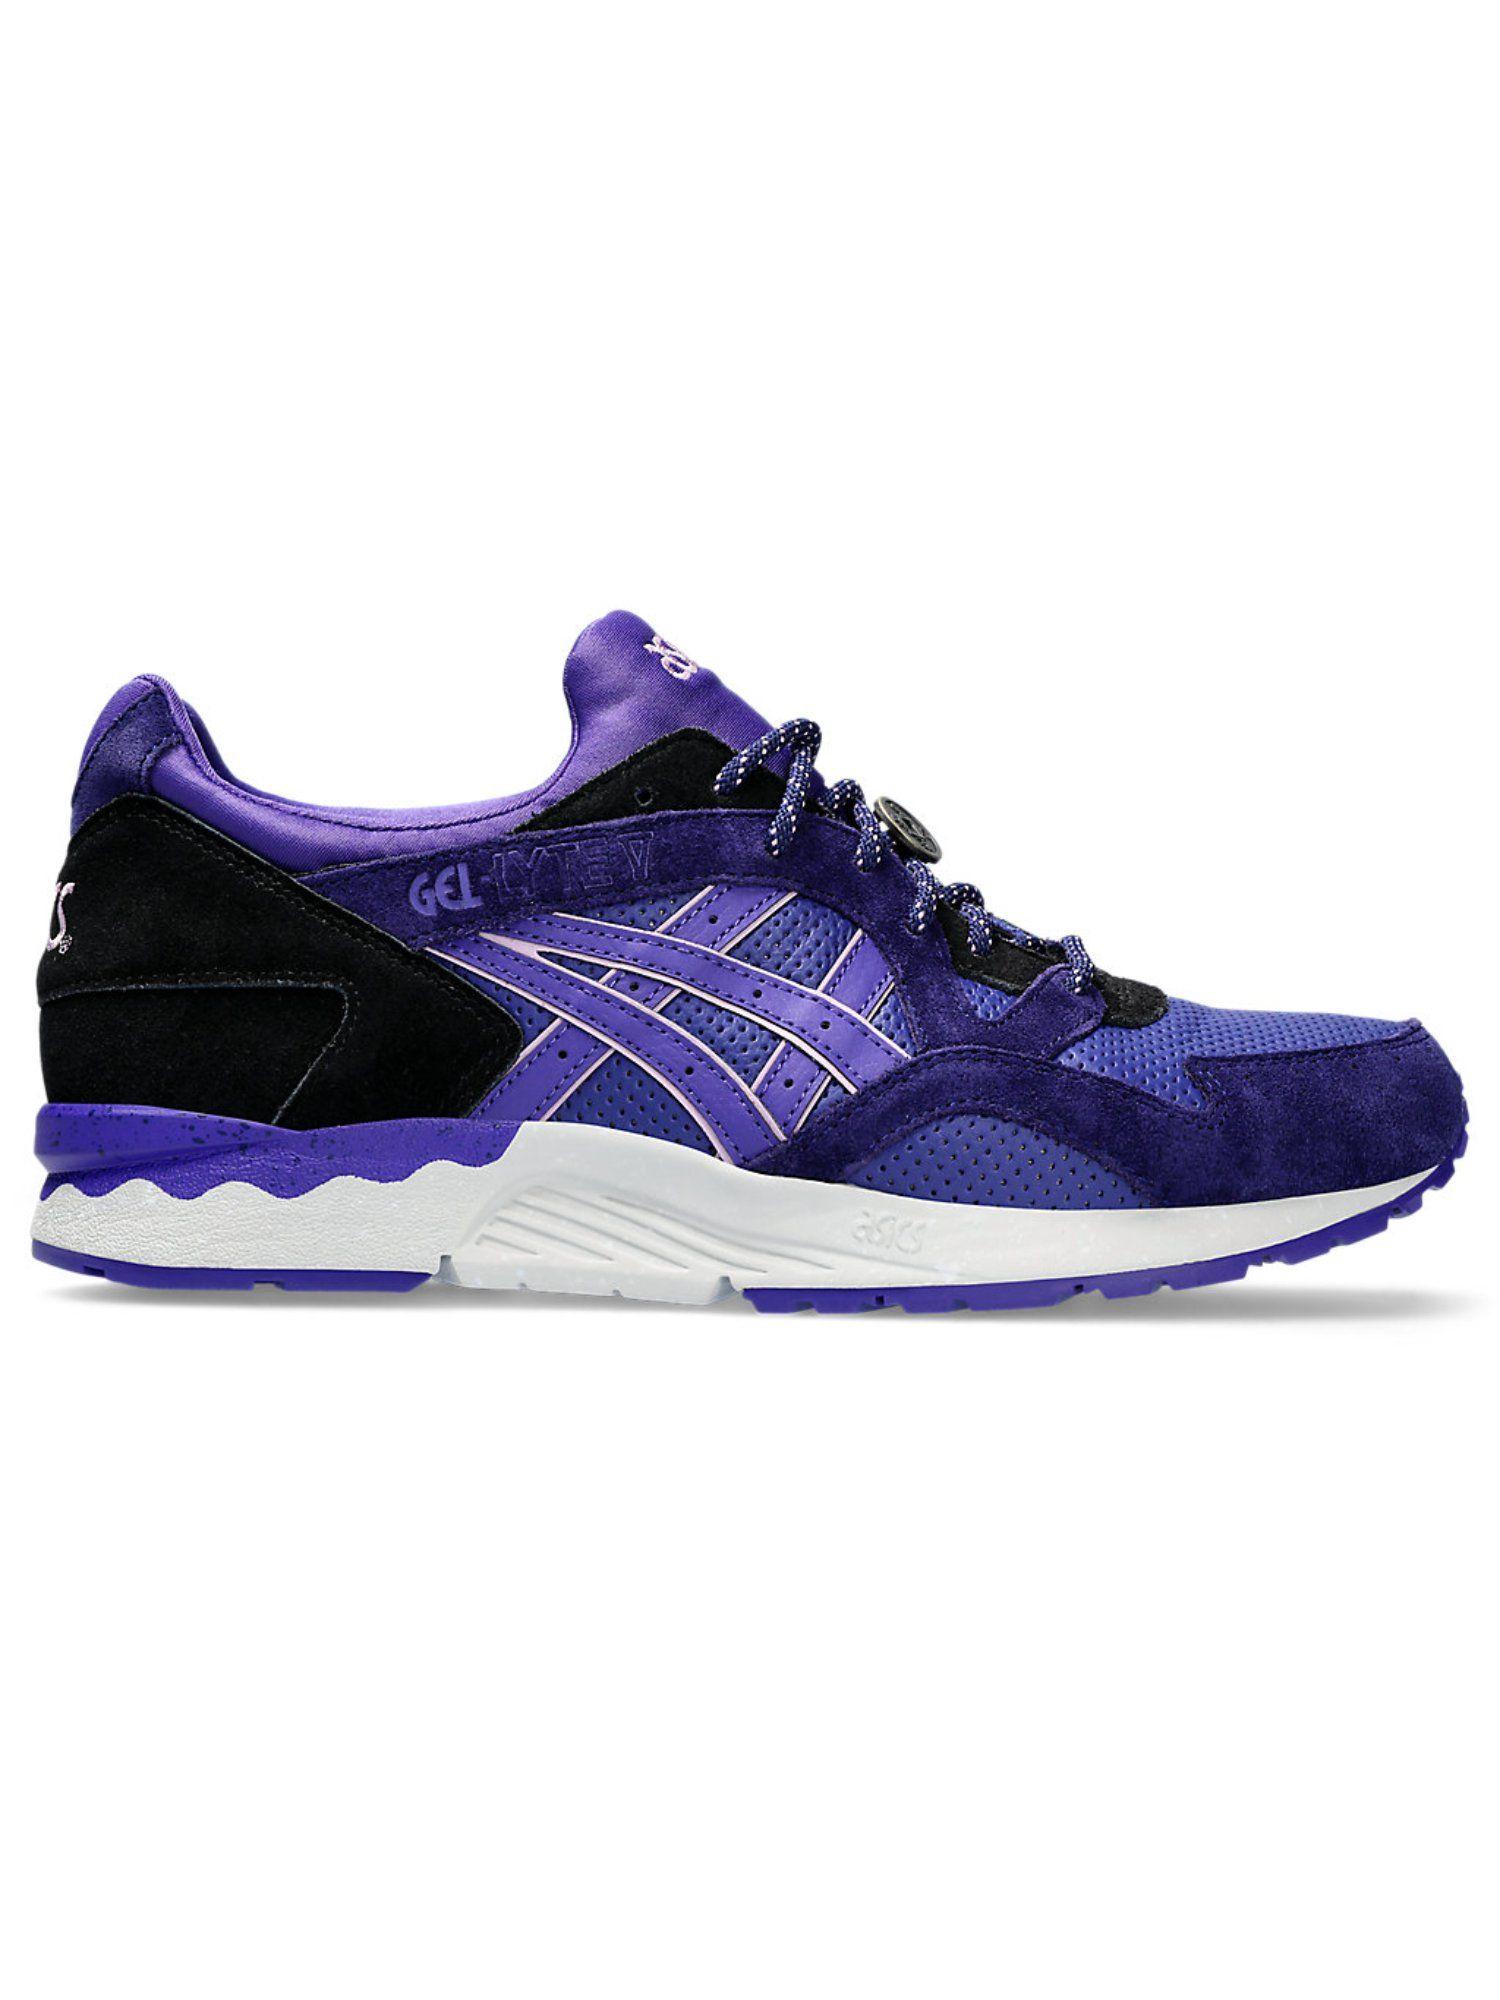 gel-lyte-v-purple-mens-sneakers